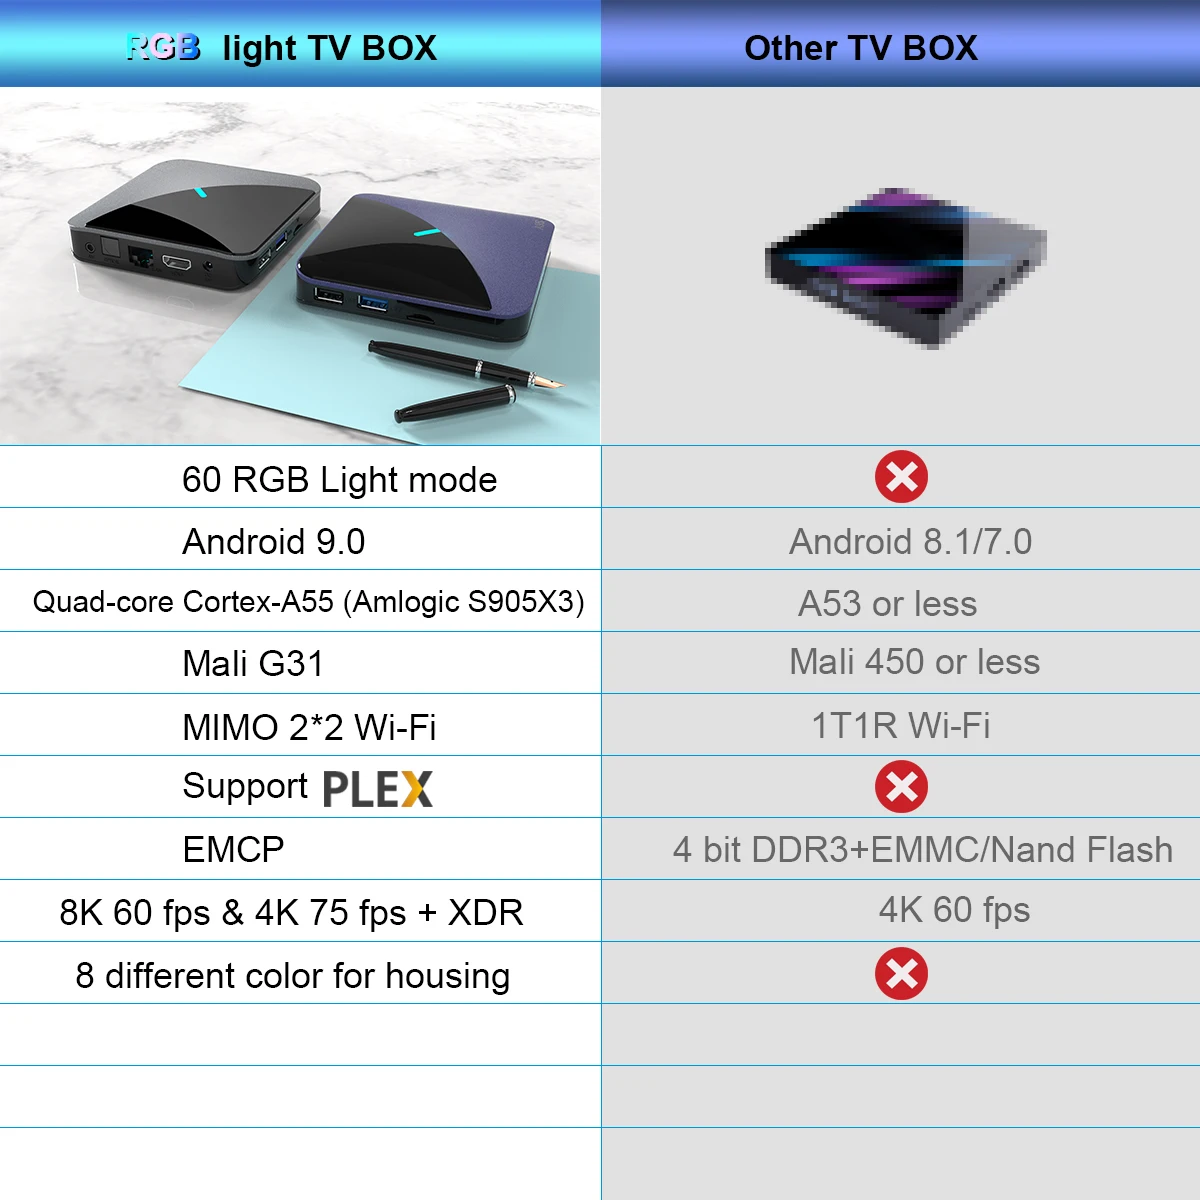 RGB светильник ТВ приставка Android 9,0 A95X F3 4 Гб 64 ГБ 32 ГБ Amlogic S905X3 2,4/5G Wifi BT ТВ приставка YouTube 8k 2G16G smart медиаплеер